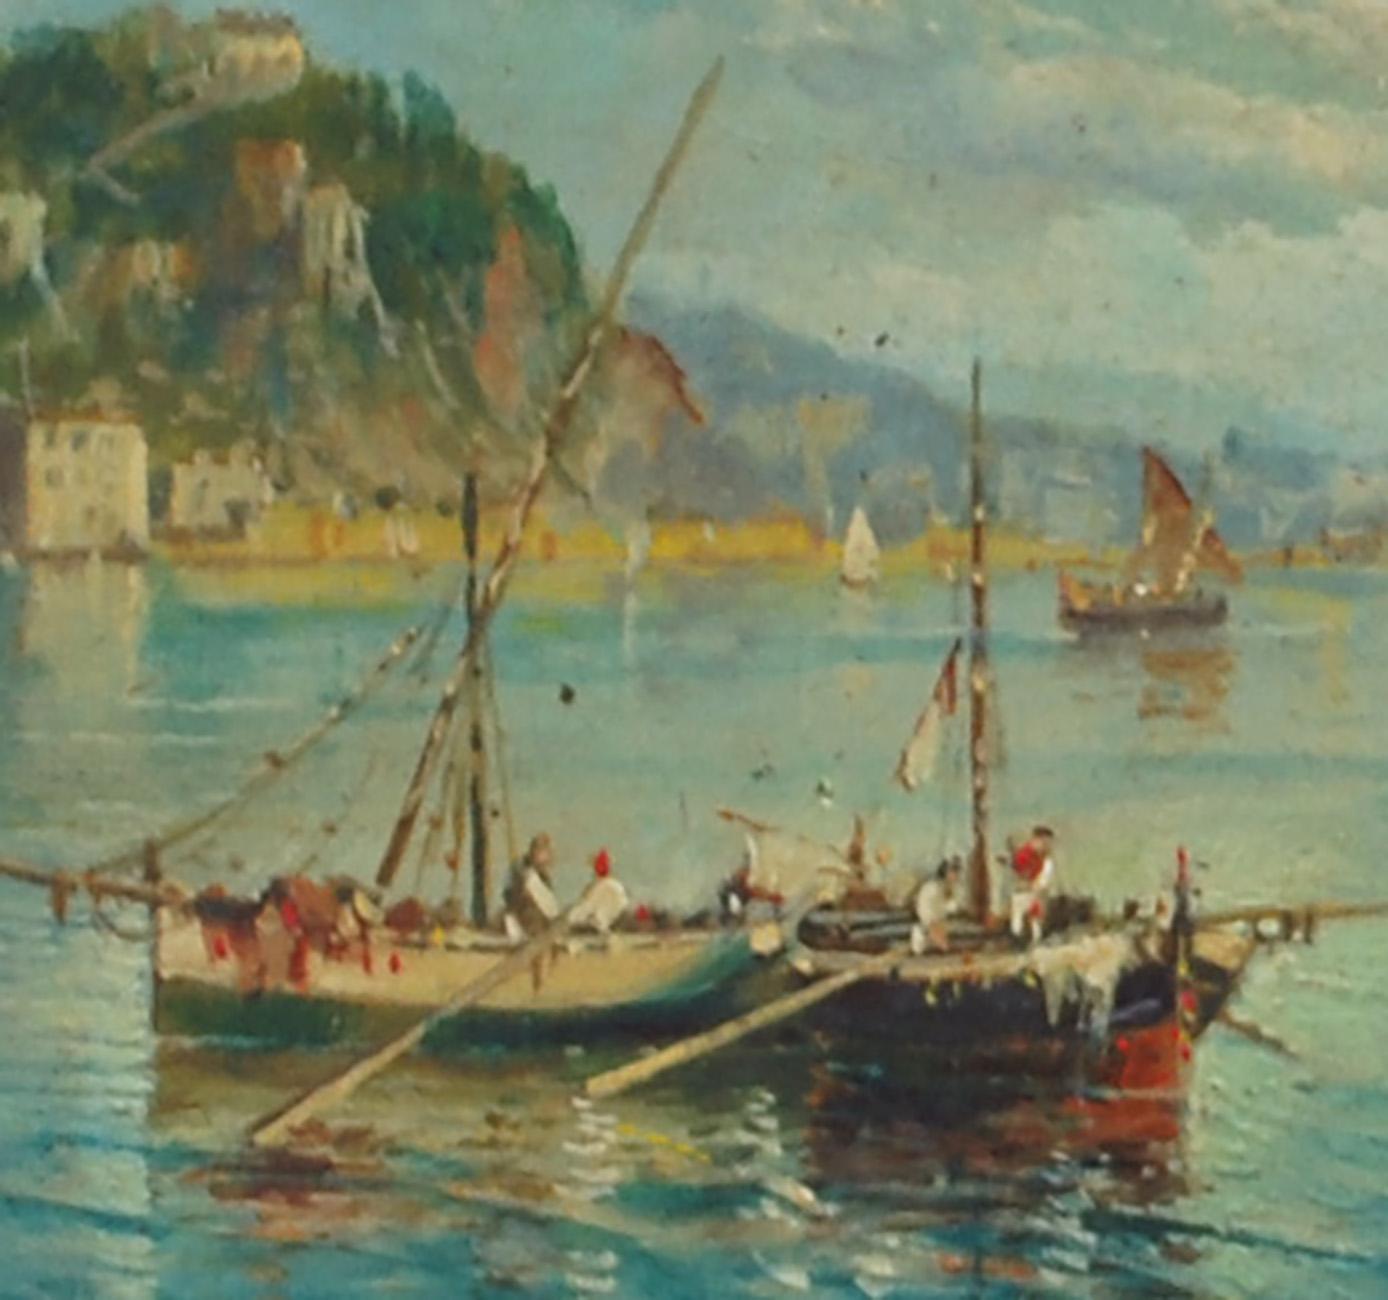 MARINE - Luigi Basile Italian landscape oil on board painting 1